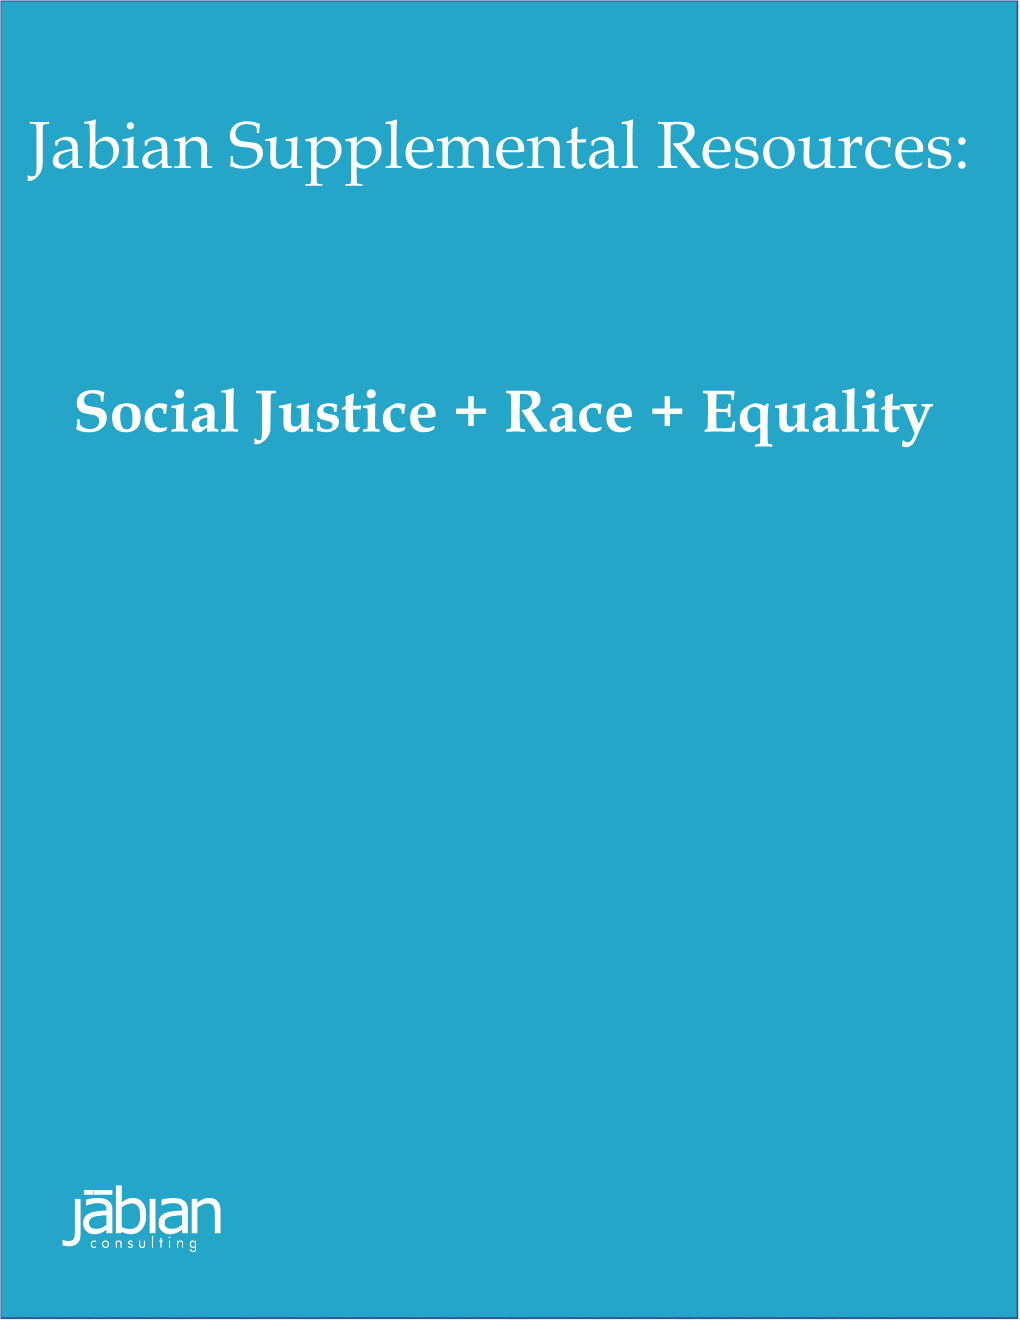 Jabian Supplemental Resources